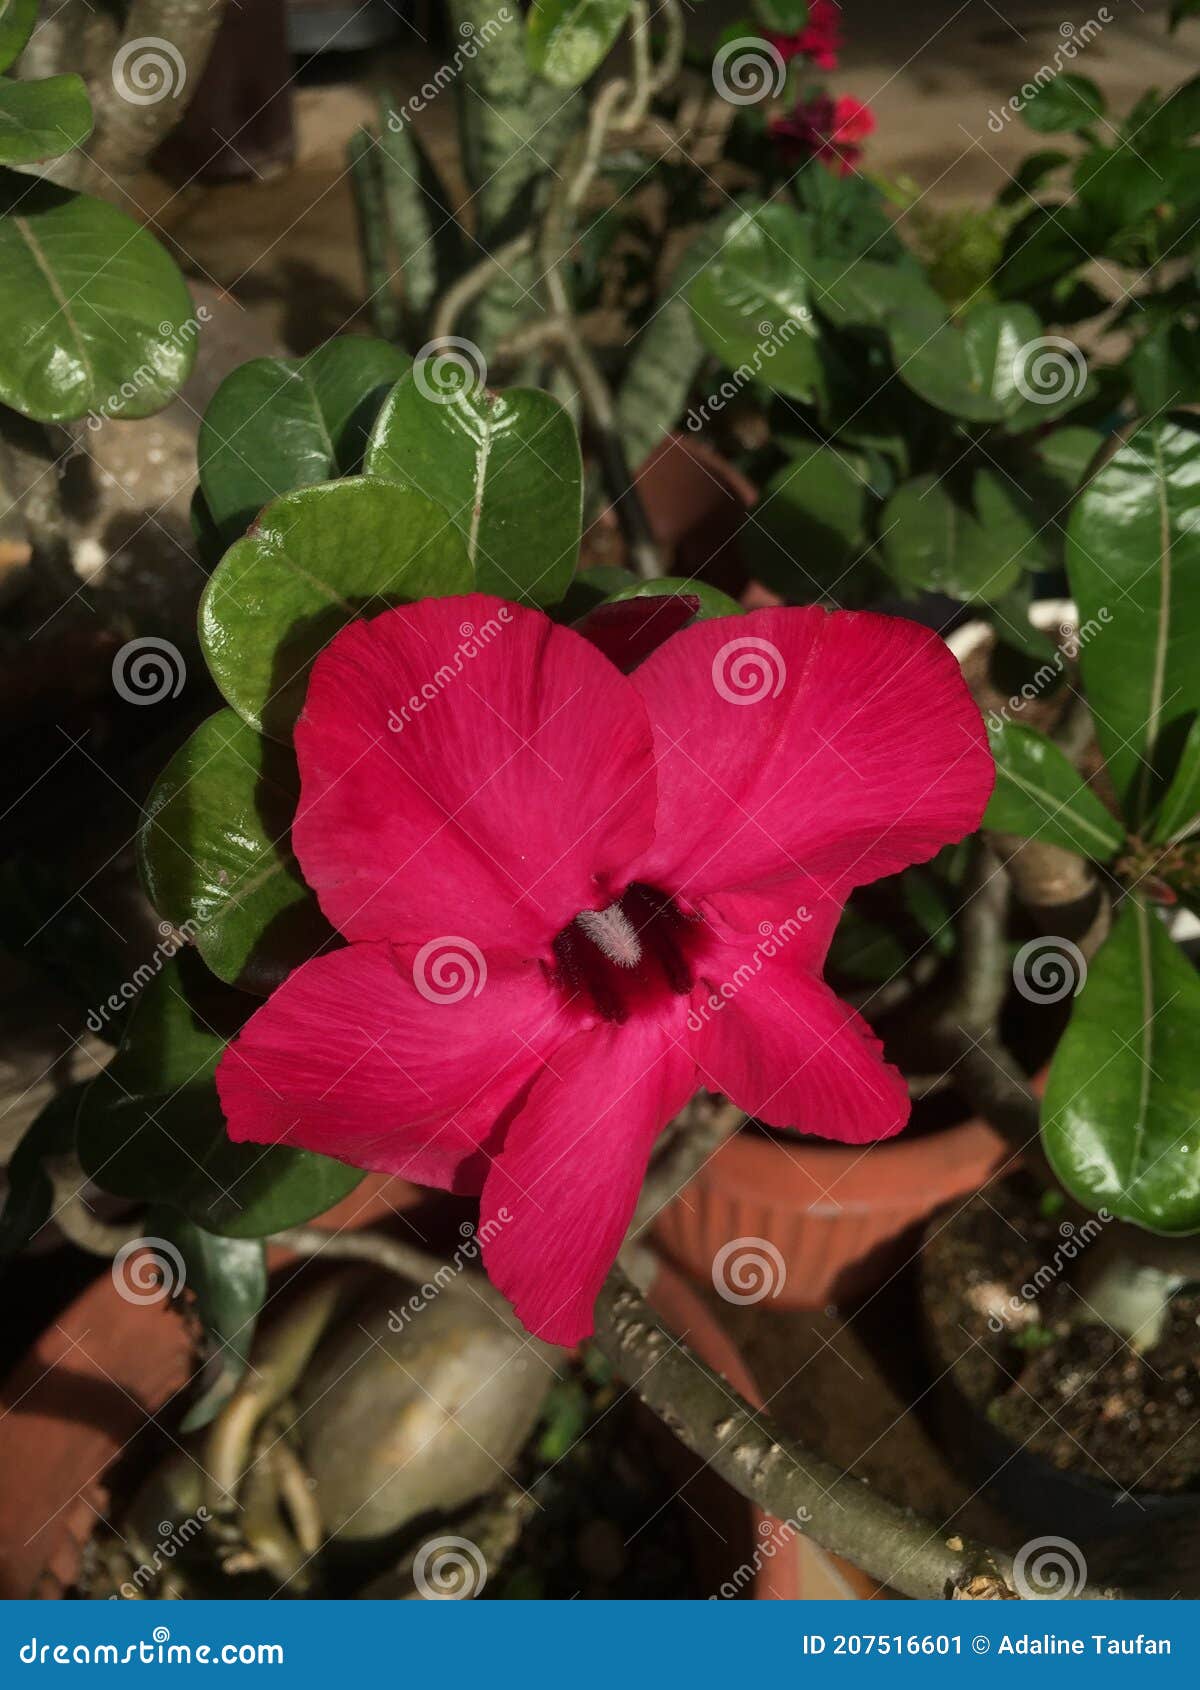 Pink Magenta Adenium Obesum Flower Stock Image - Image of adenium ...